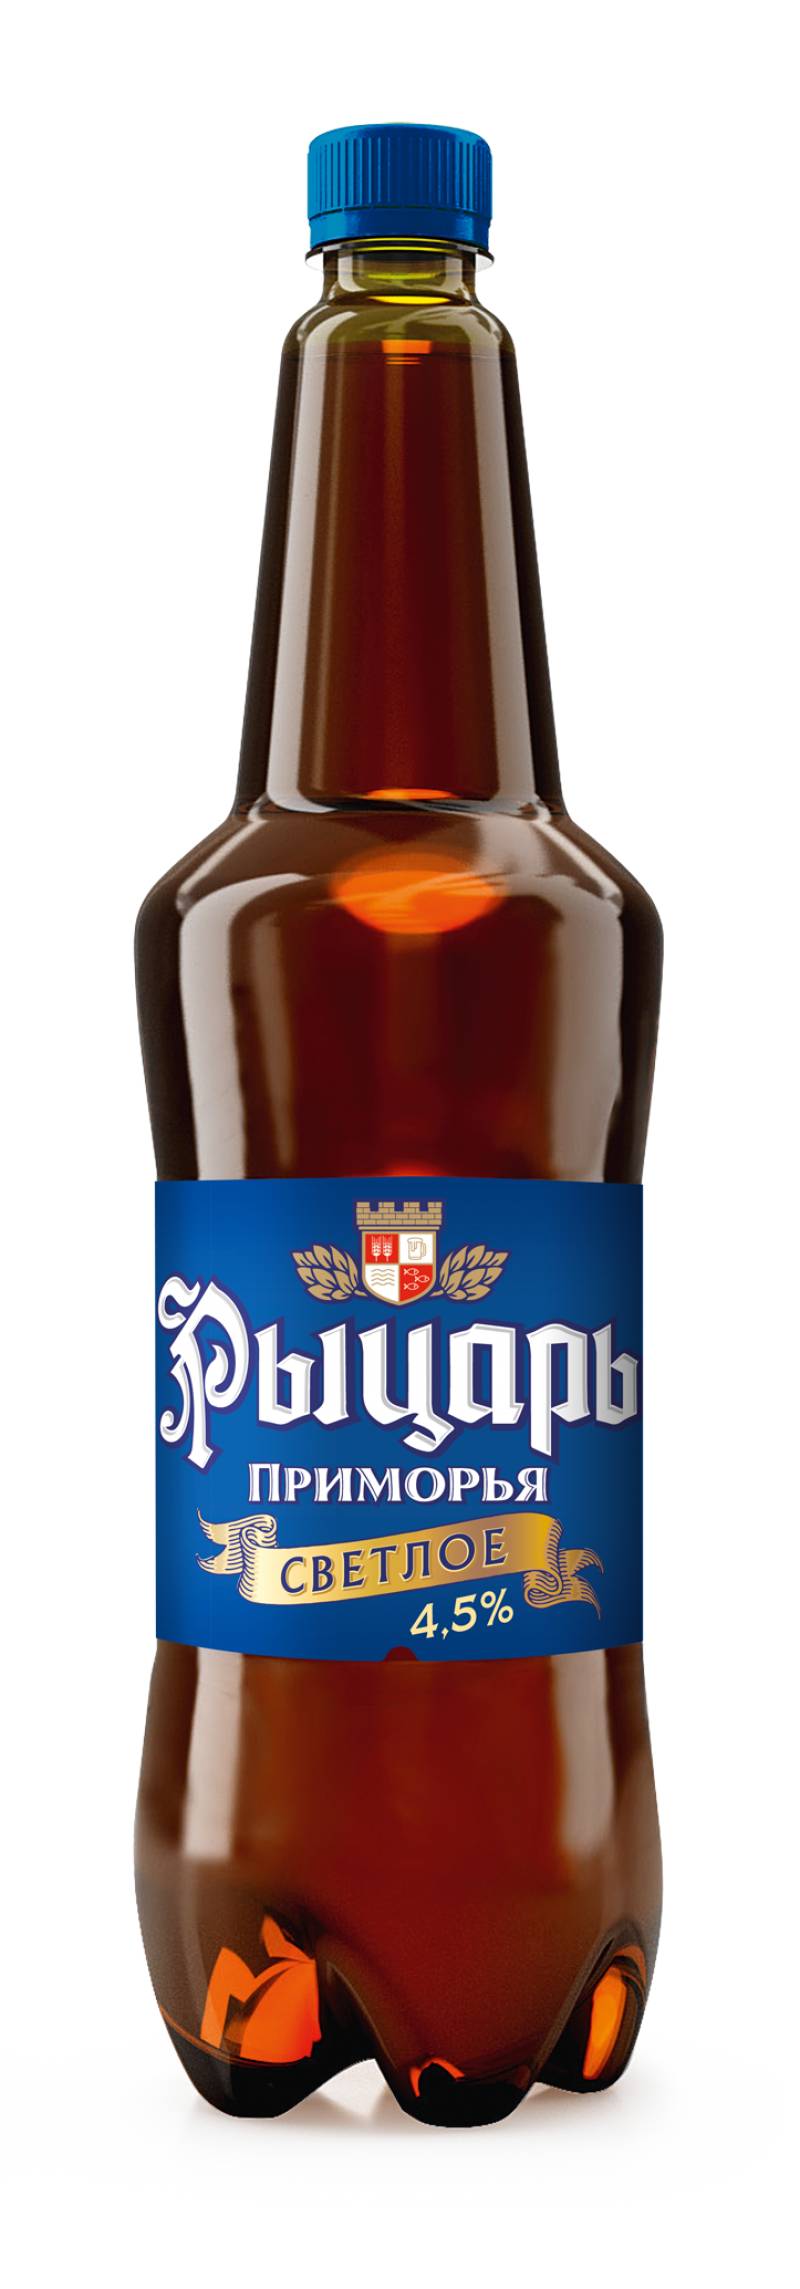 Пиво Рыцарь Приморья (крепкое)1,35 л. (Россия)